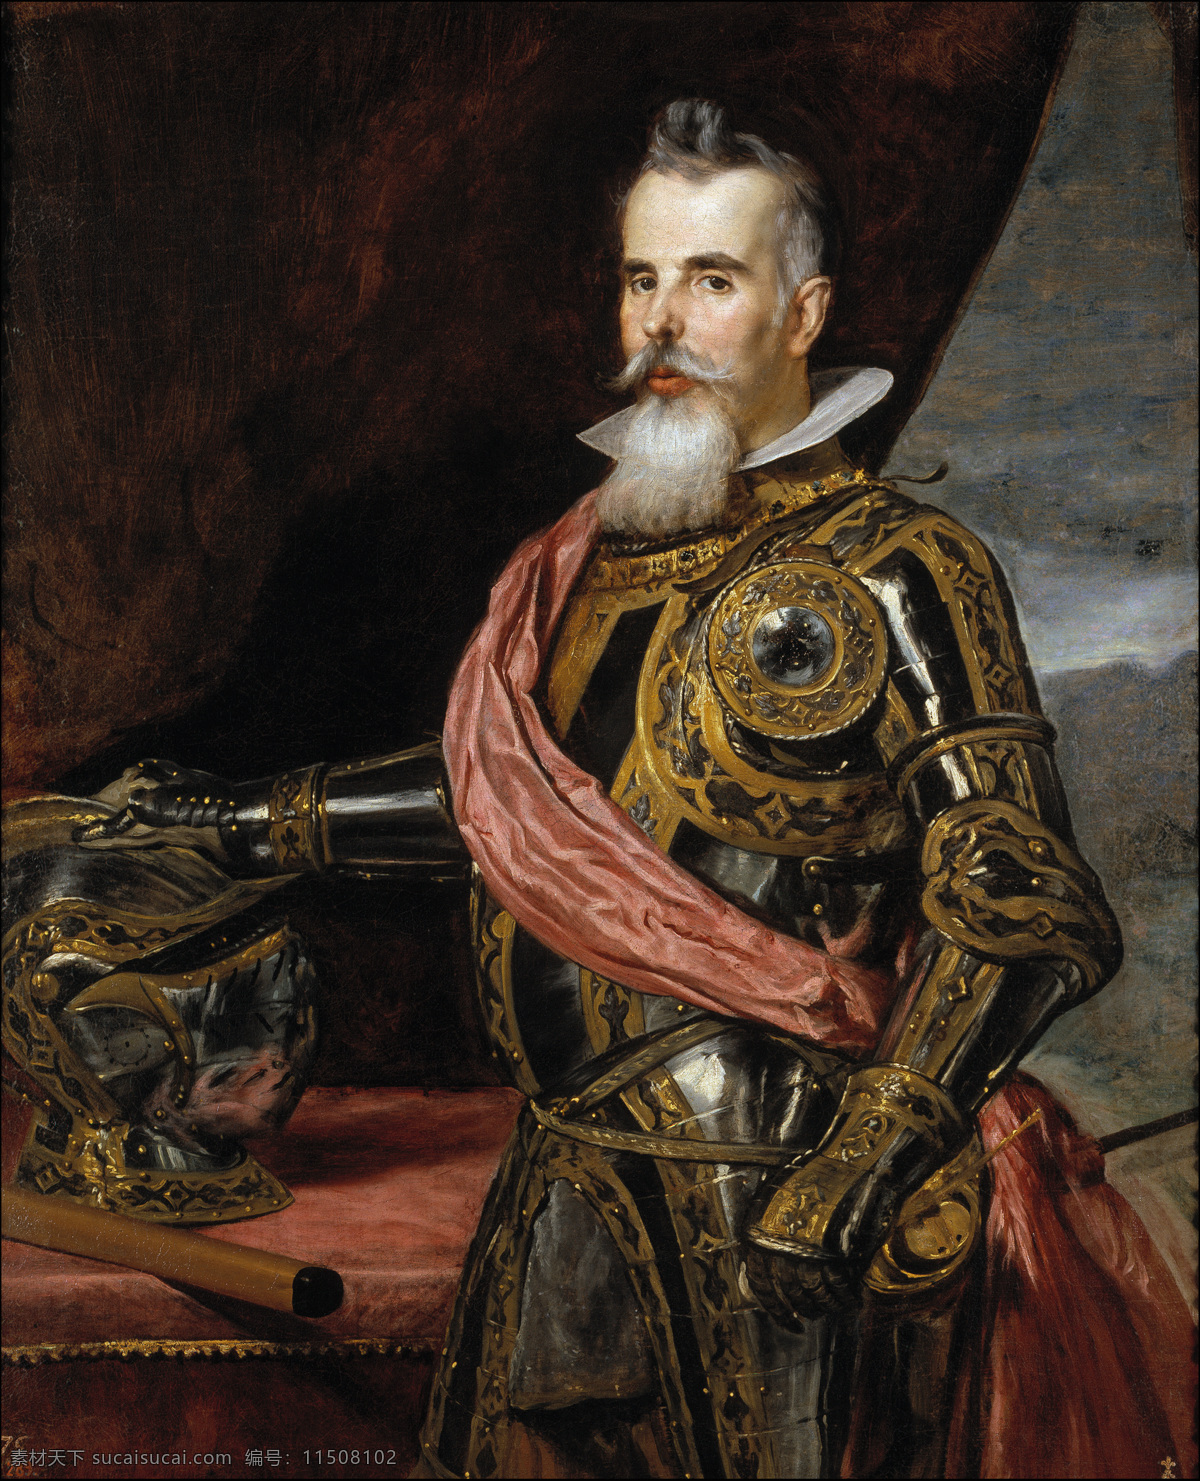 西班牙公爵 巴洛克 时代 油画 骑士装扮 迭戈 委 拉 斯凯 兹 作品 西班牙画家 菲利普 四世 统治 时期 绘画书法 文化艺术